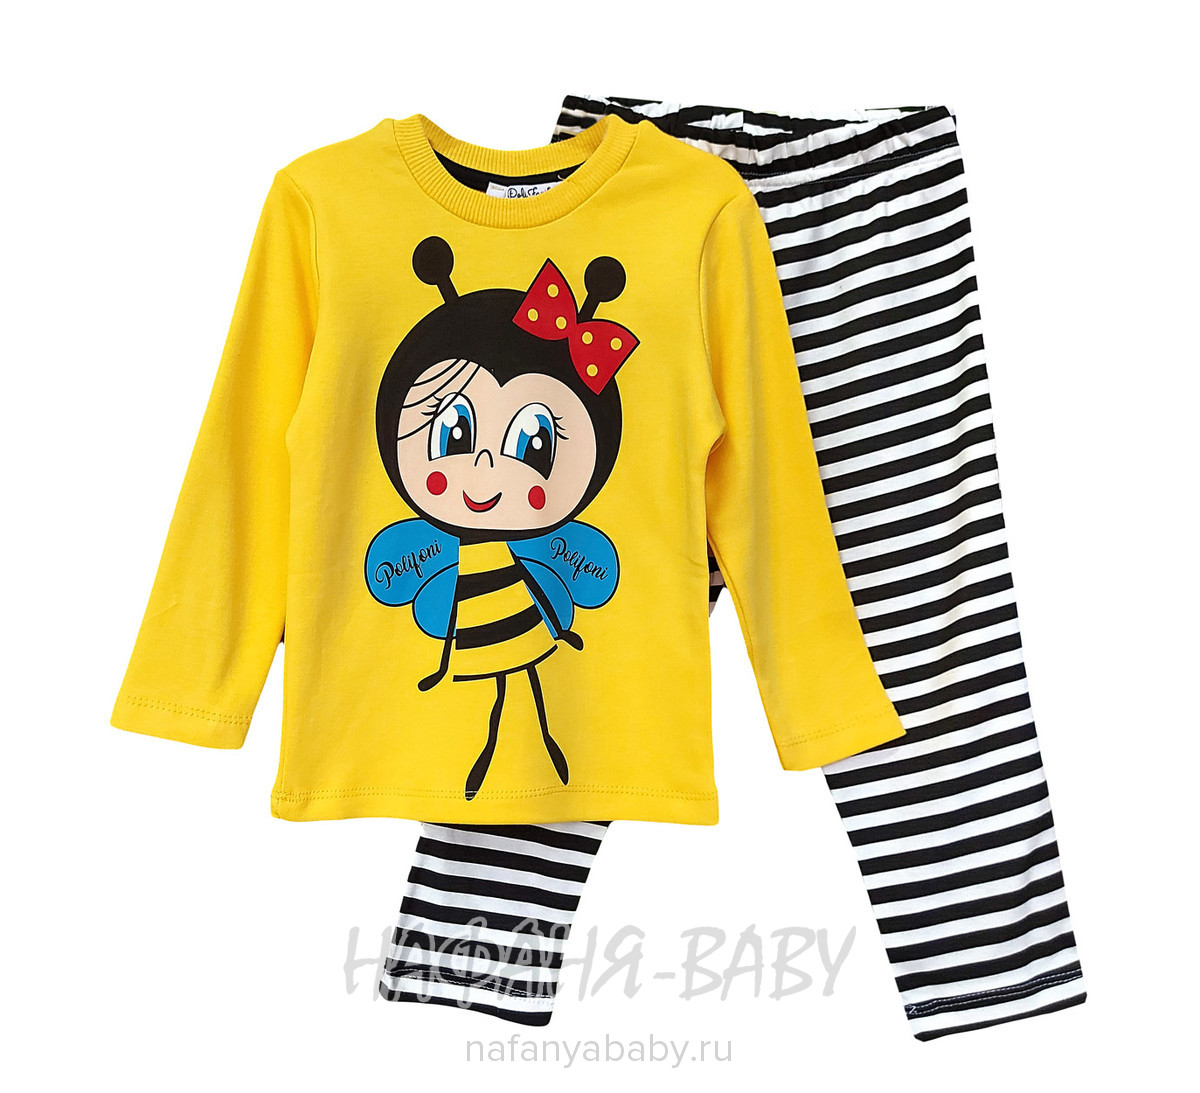 Детская пижама POLI FONI арт: 307, 5-9 лет, 1-4 года, цвет желтый, оптом Турция